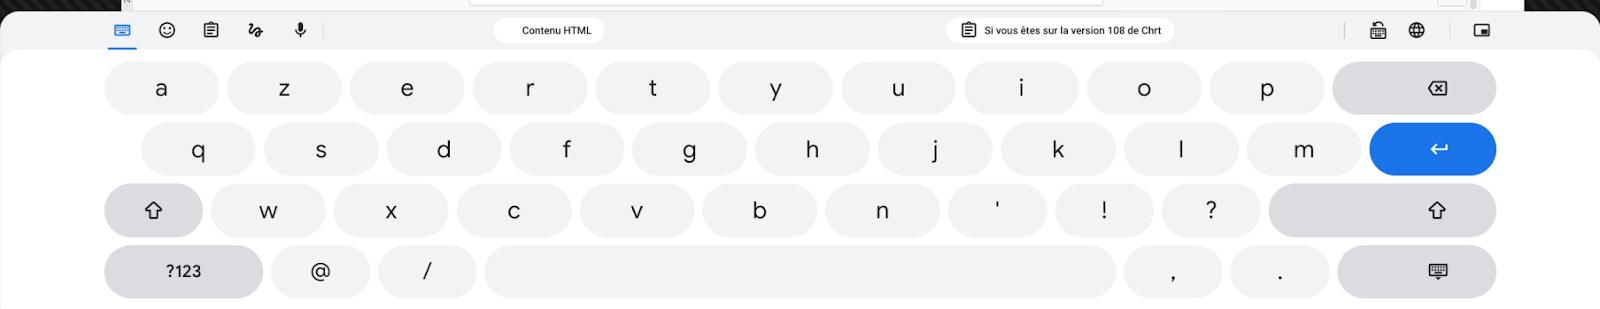 Le clavier tactile de ChromeOS devient plus intuitif